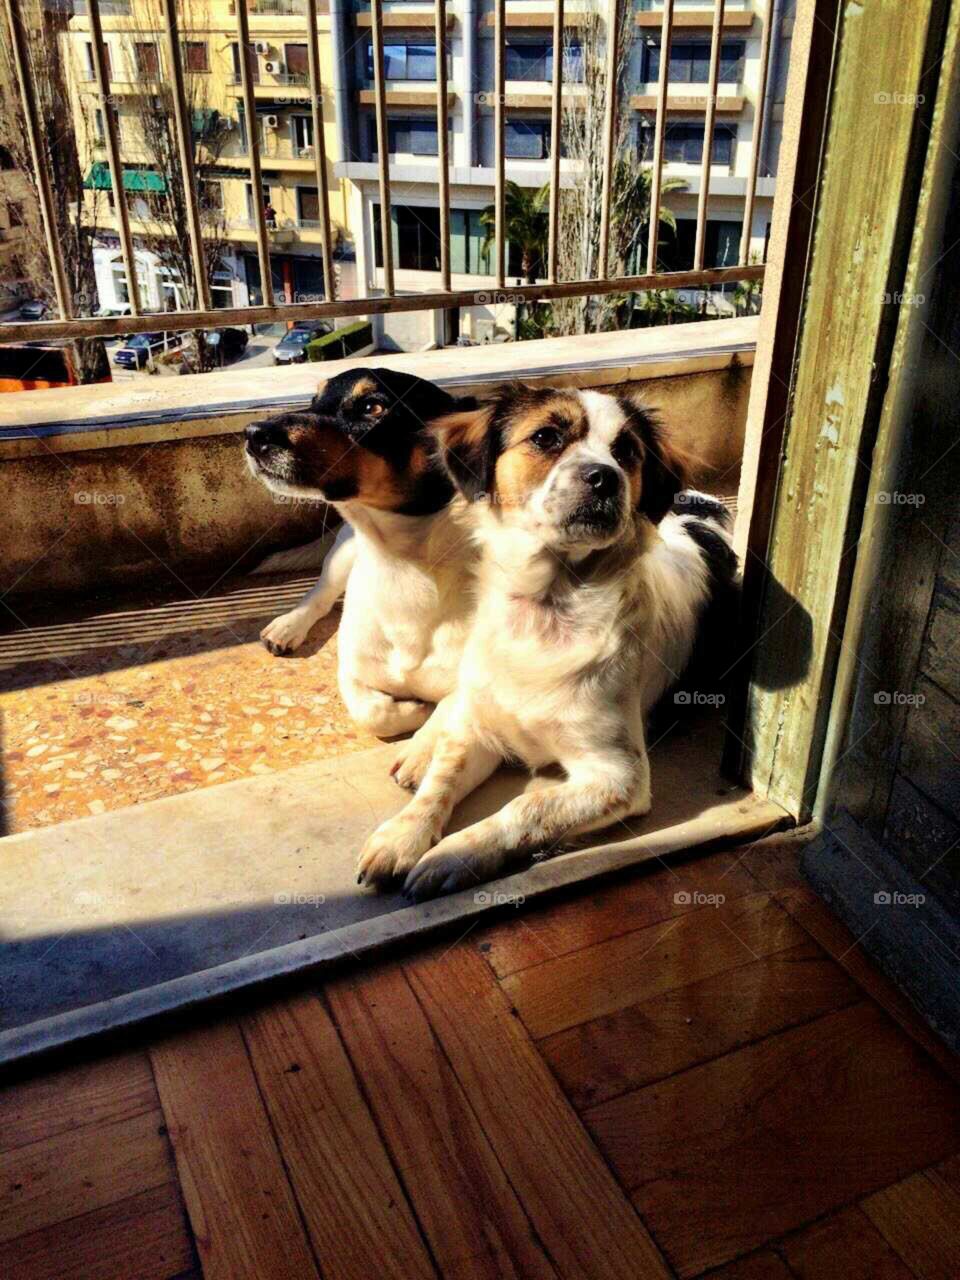 sunbathing dogs